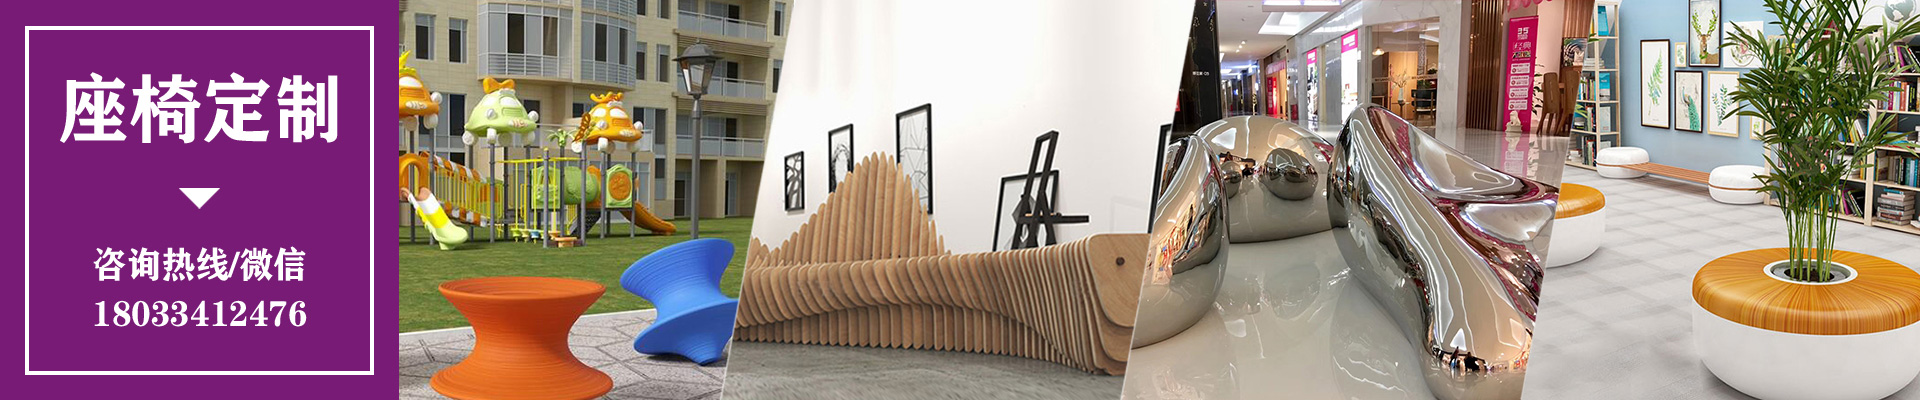 木质异形创意坐凳防腐木切片座椅